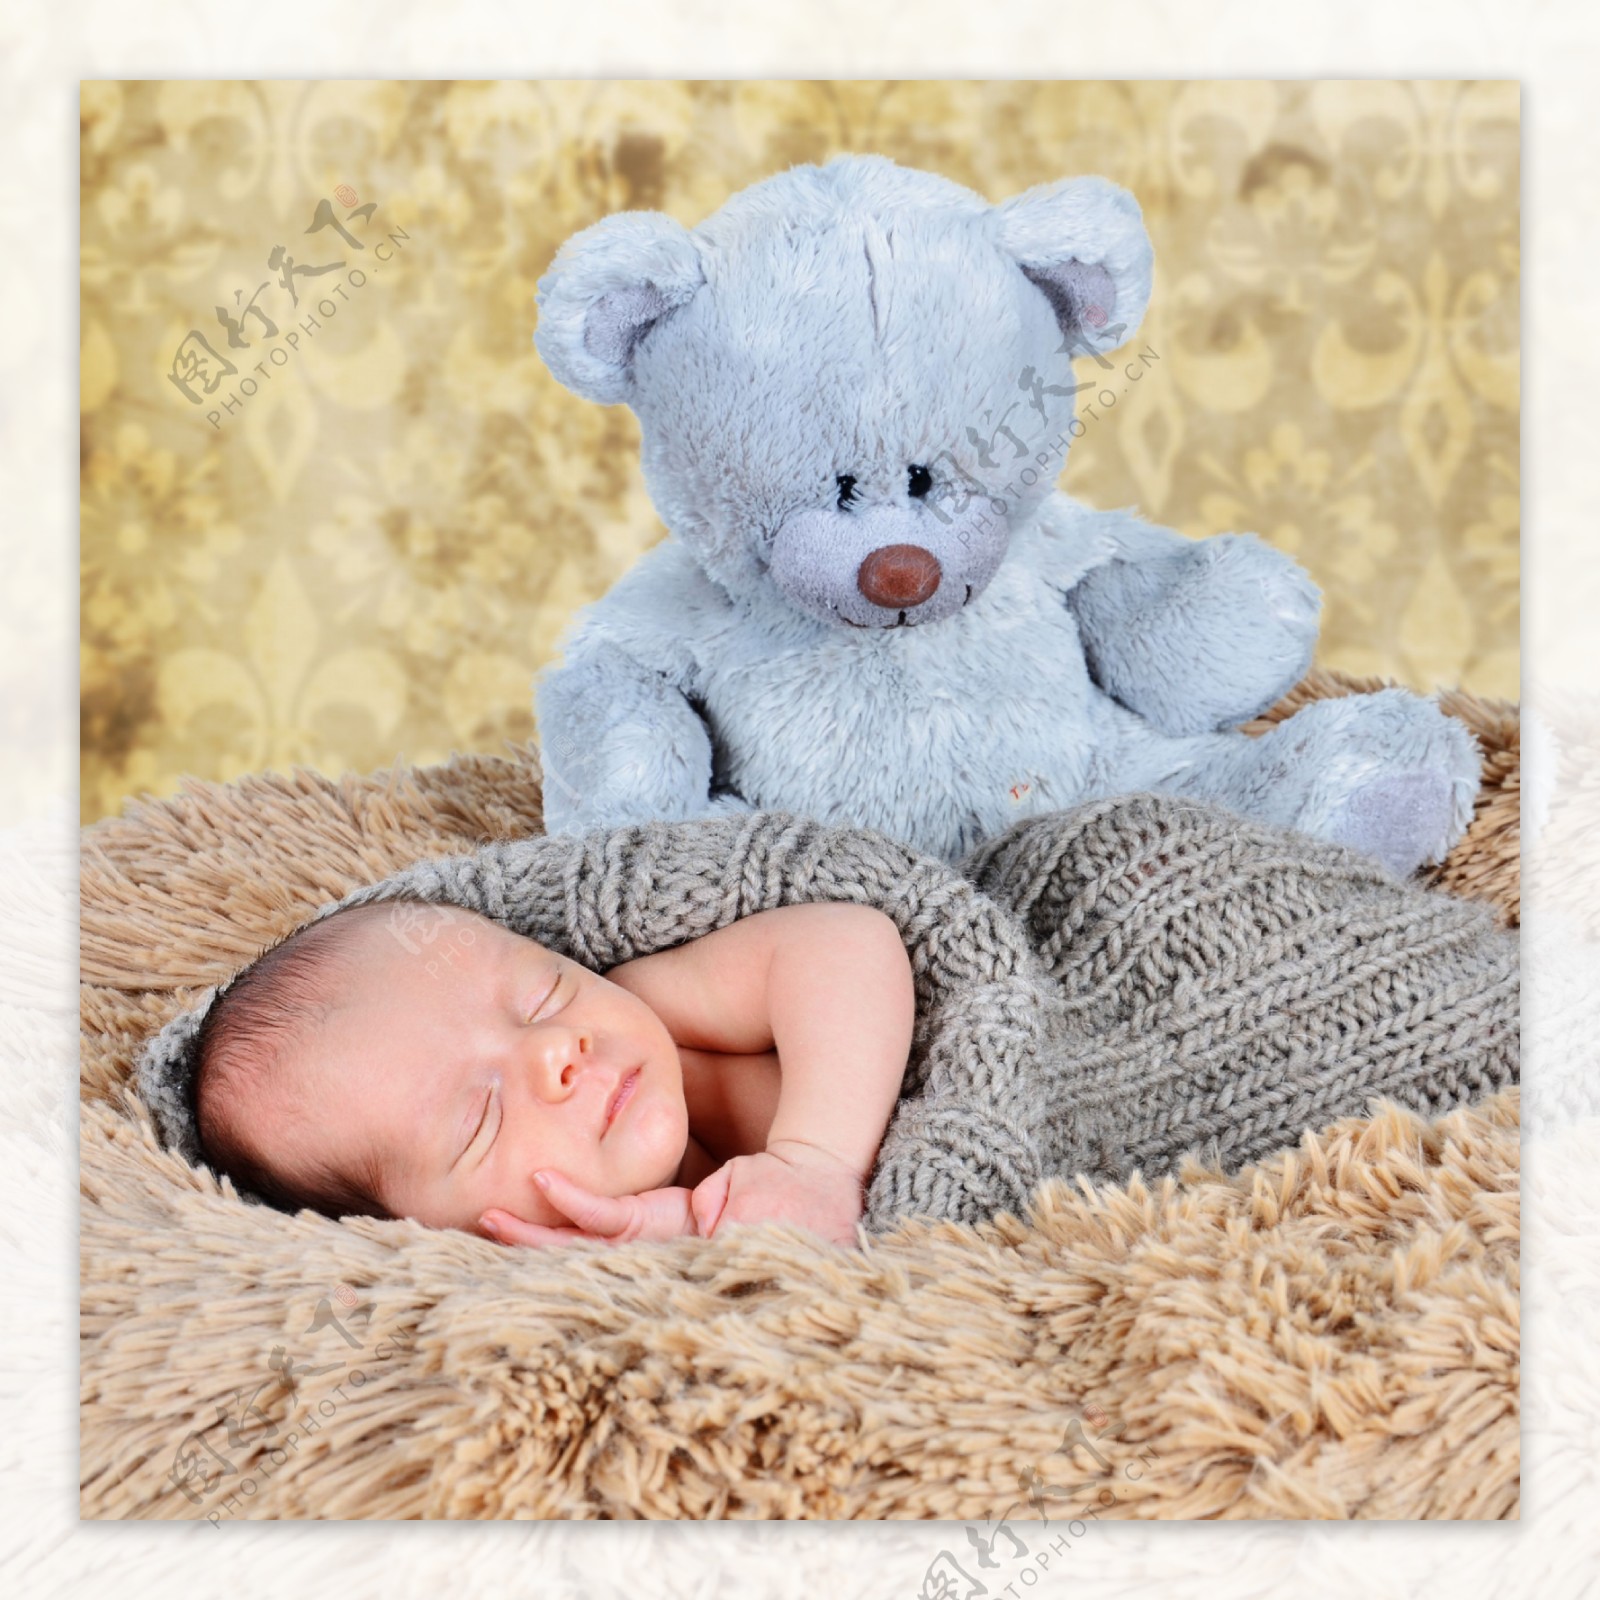 小熊与睡着的婴儿图片